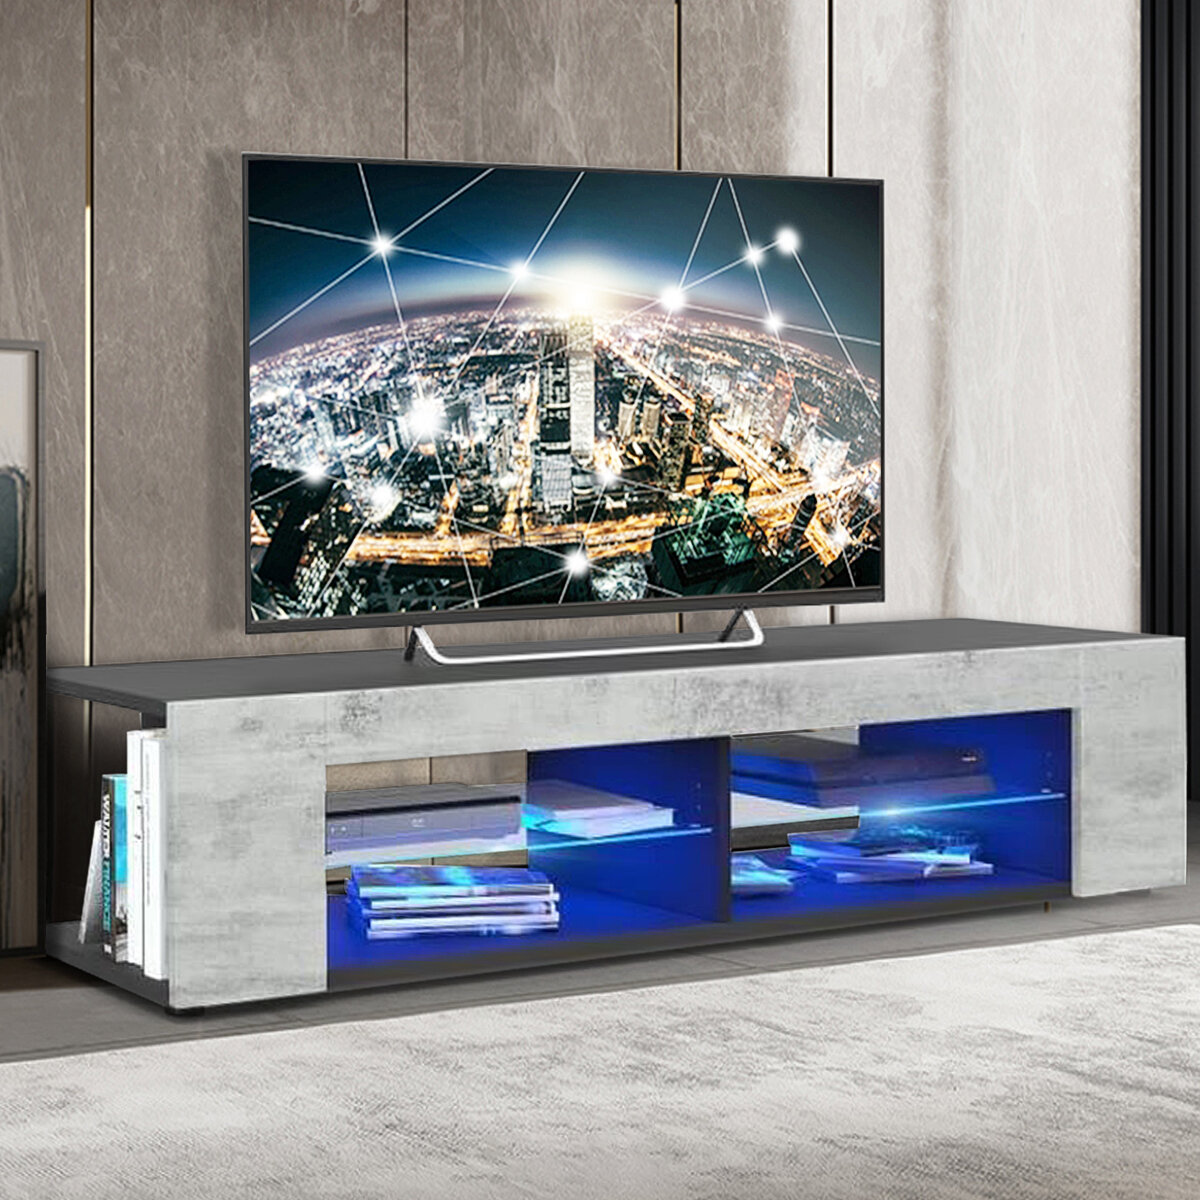 Woodyhome Hoogglans TV-standaard met LED-verlichting Moderne TV Console Opslag Houder met 4 Open Lag